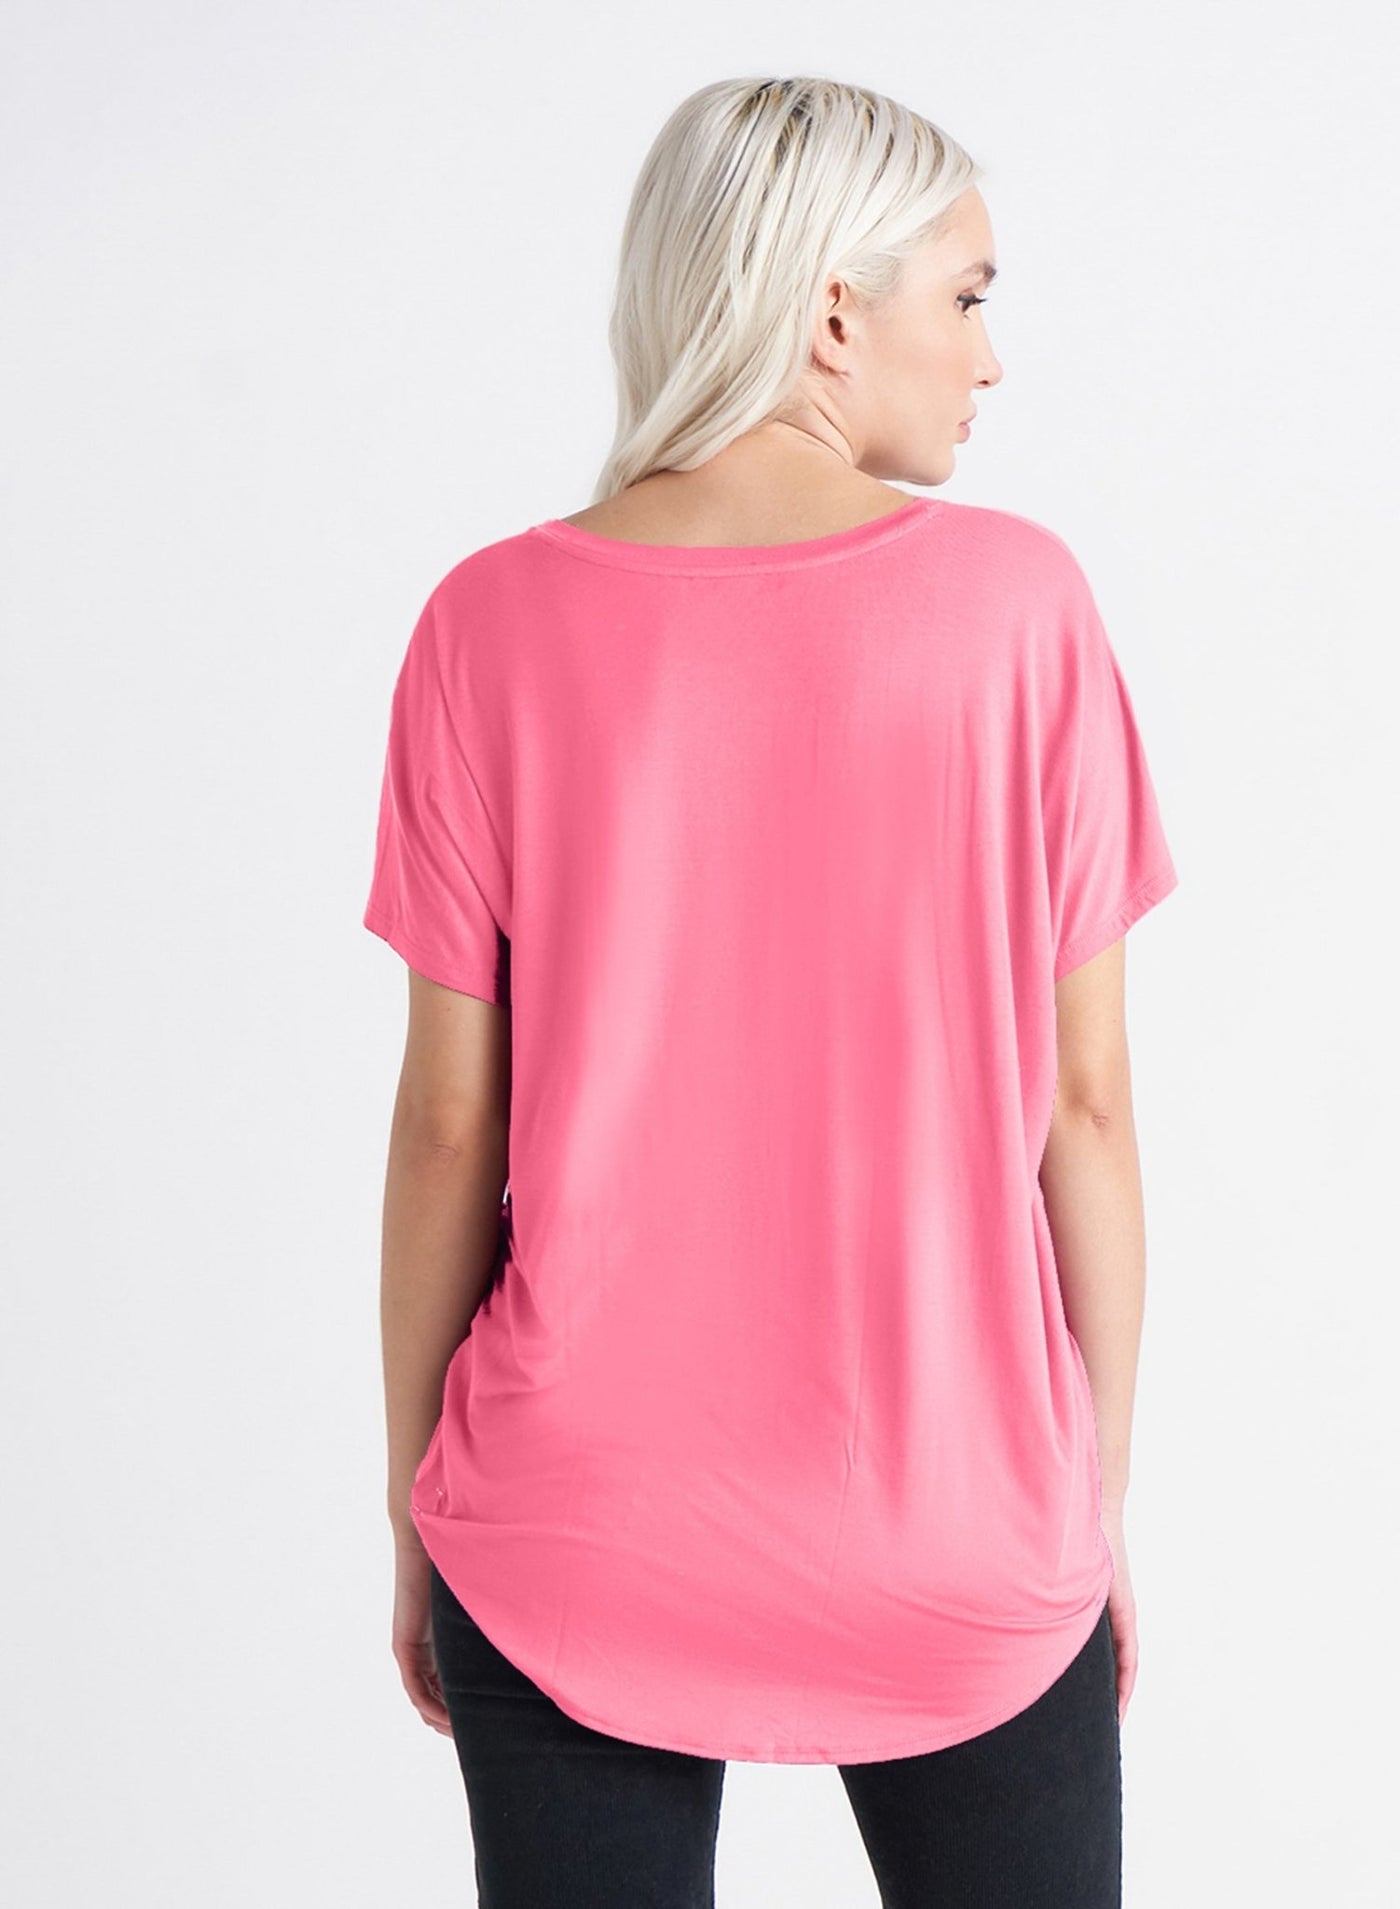 V Neck Knit Tee - Hot Pink - Blue Sky Clothing & Lingerie